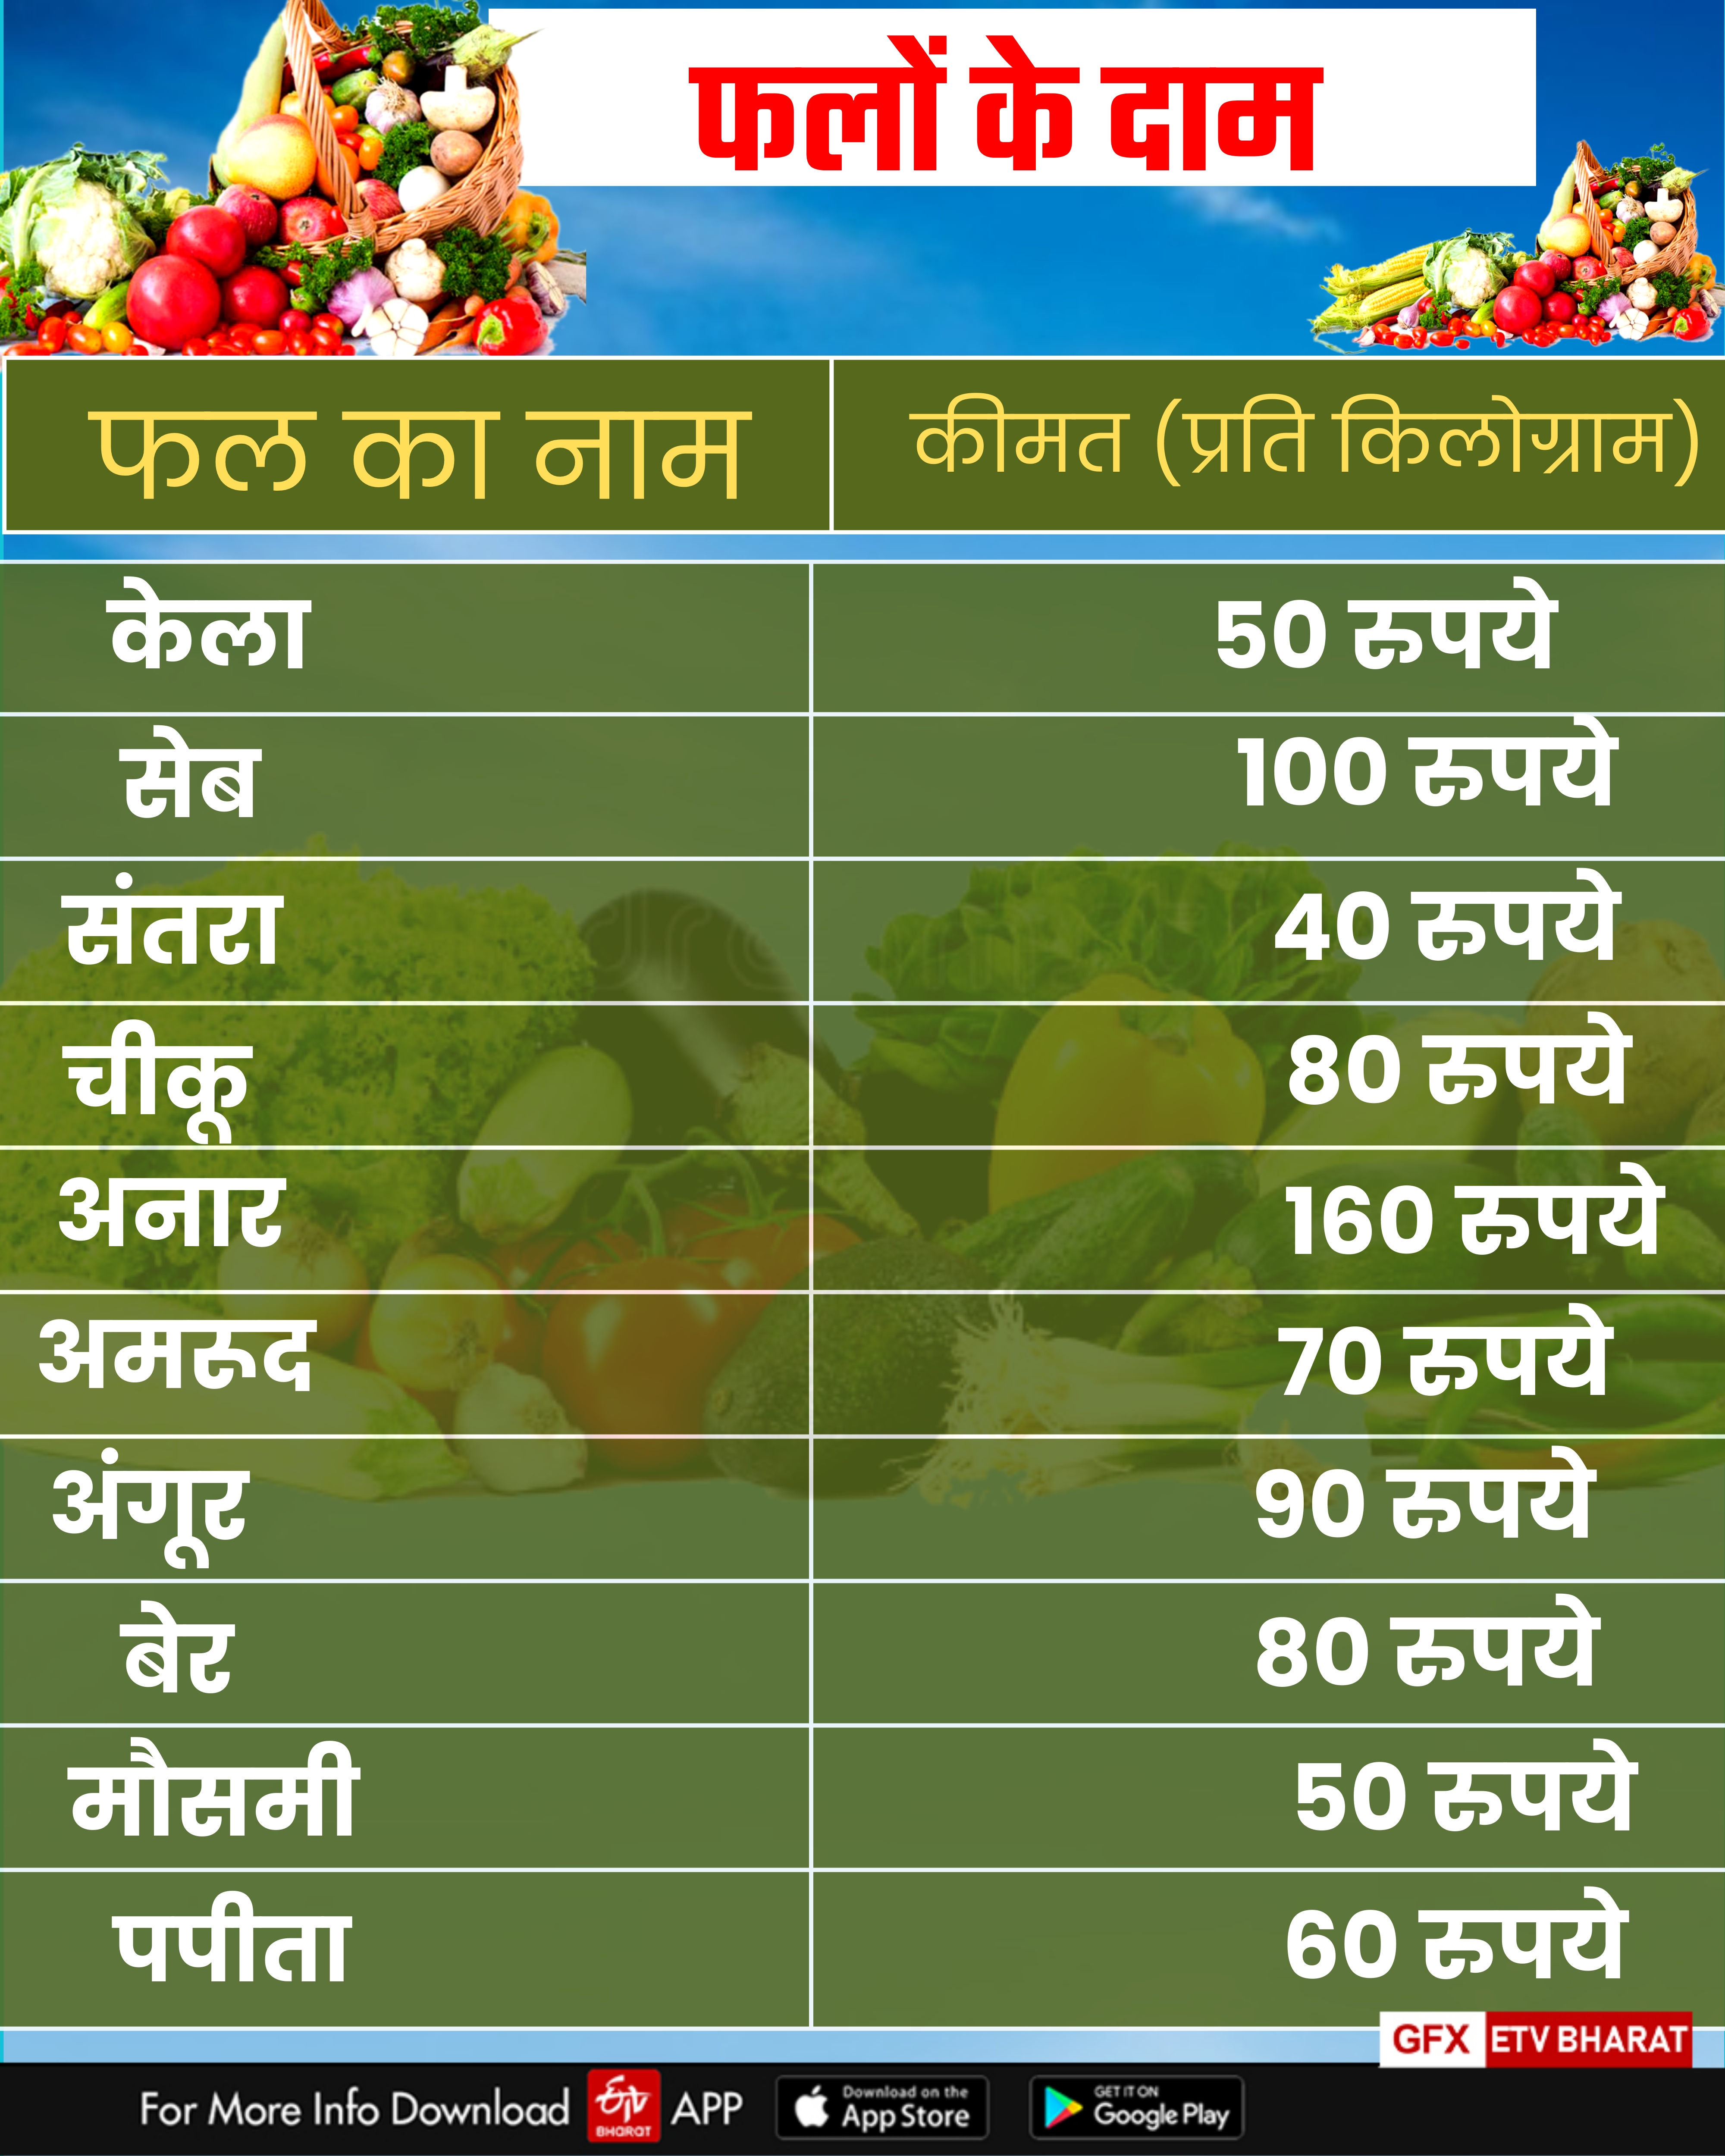 Fruits Price in Haryana